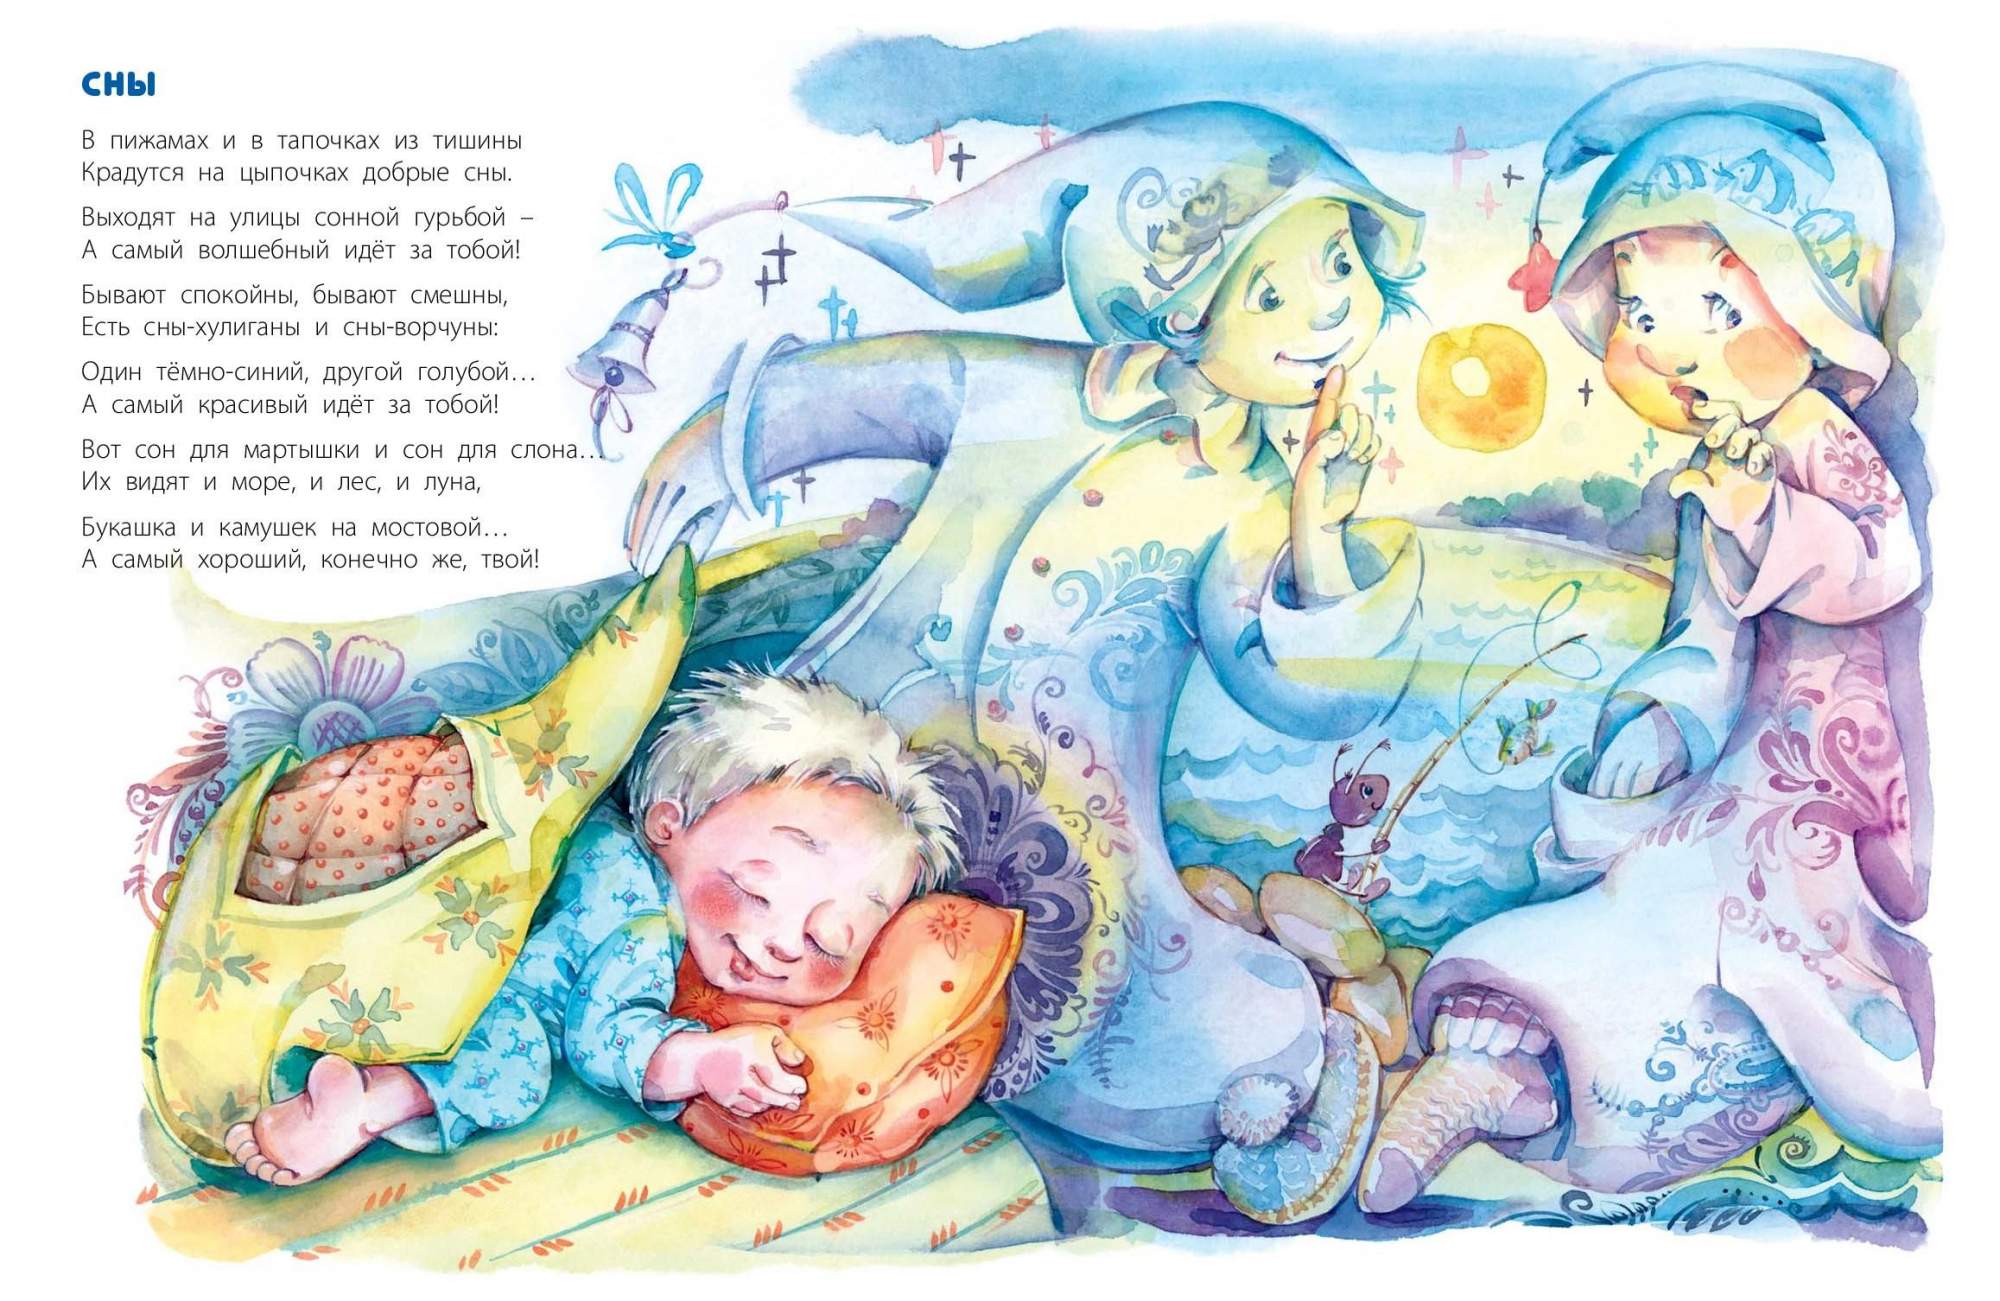 Колыбельные про детей. Иллюстрации к детским книгам. Стихи про сон для детей. Сонные сказки для детей.